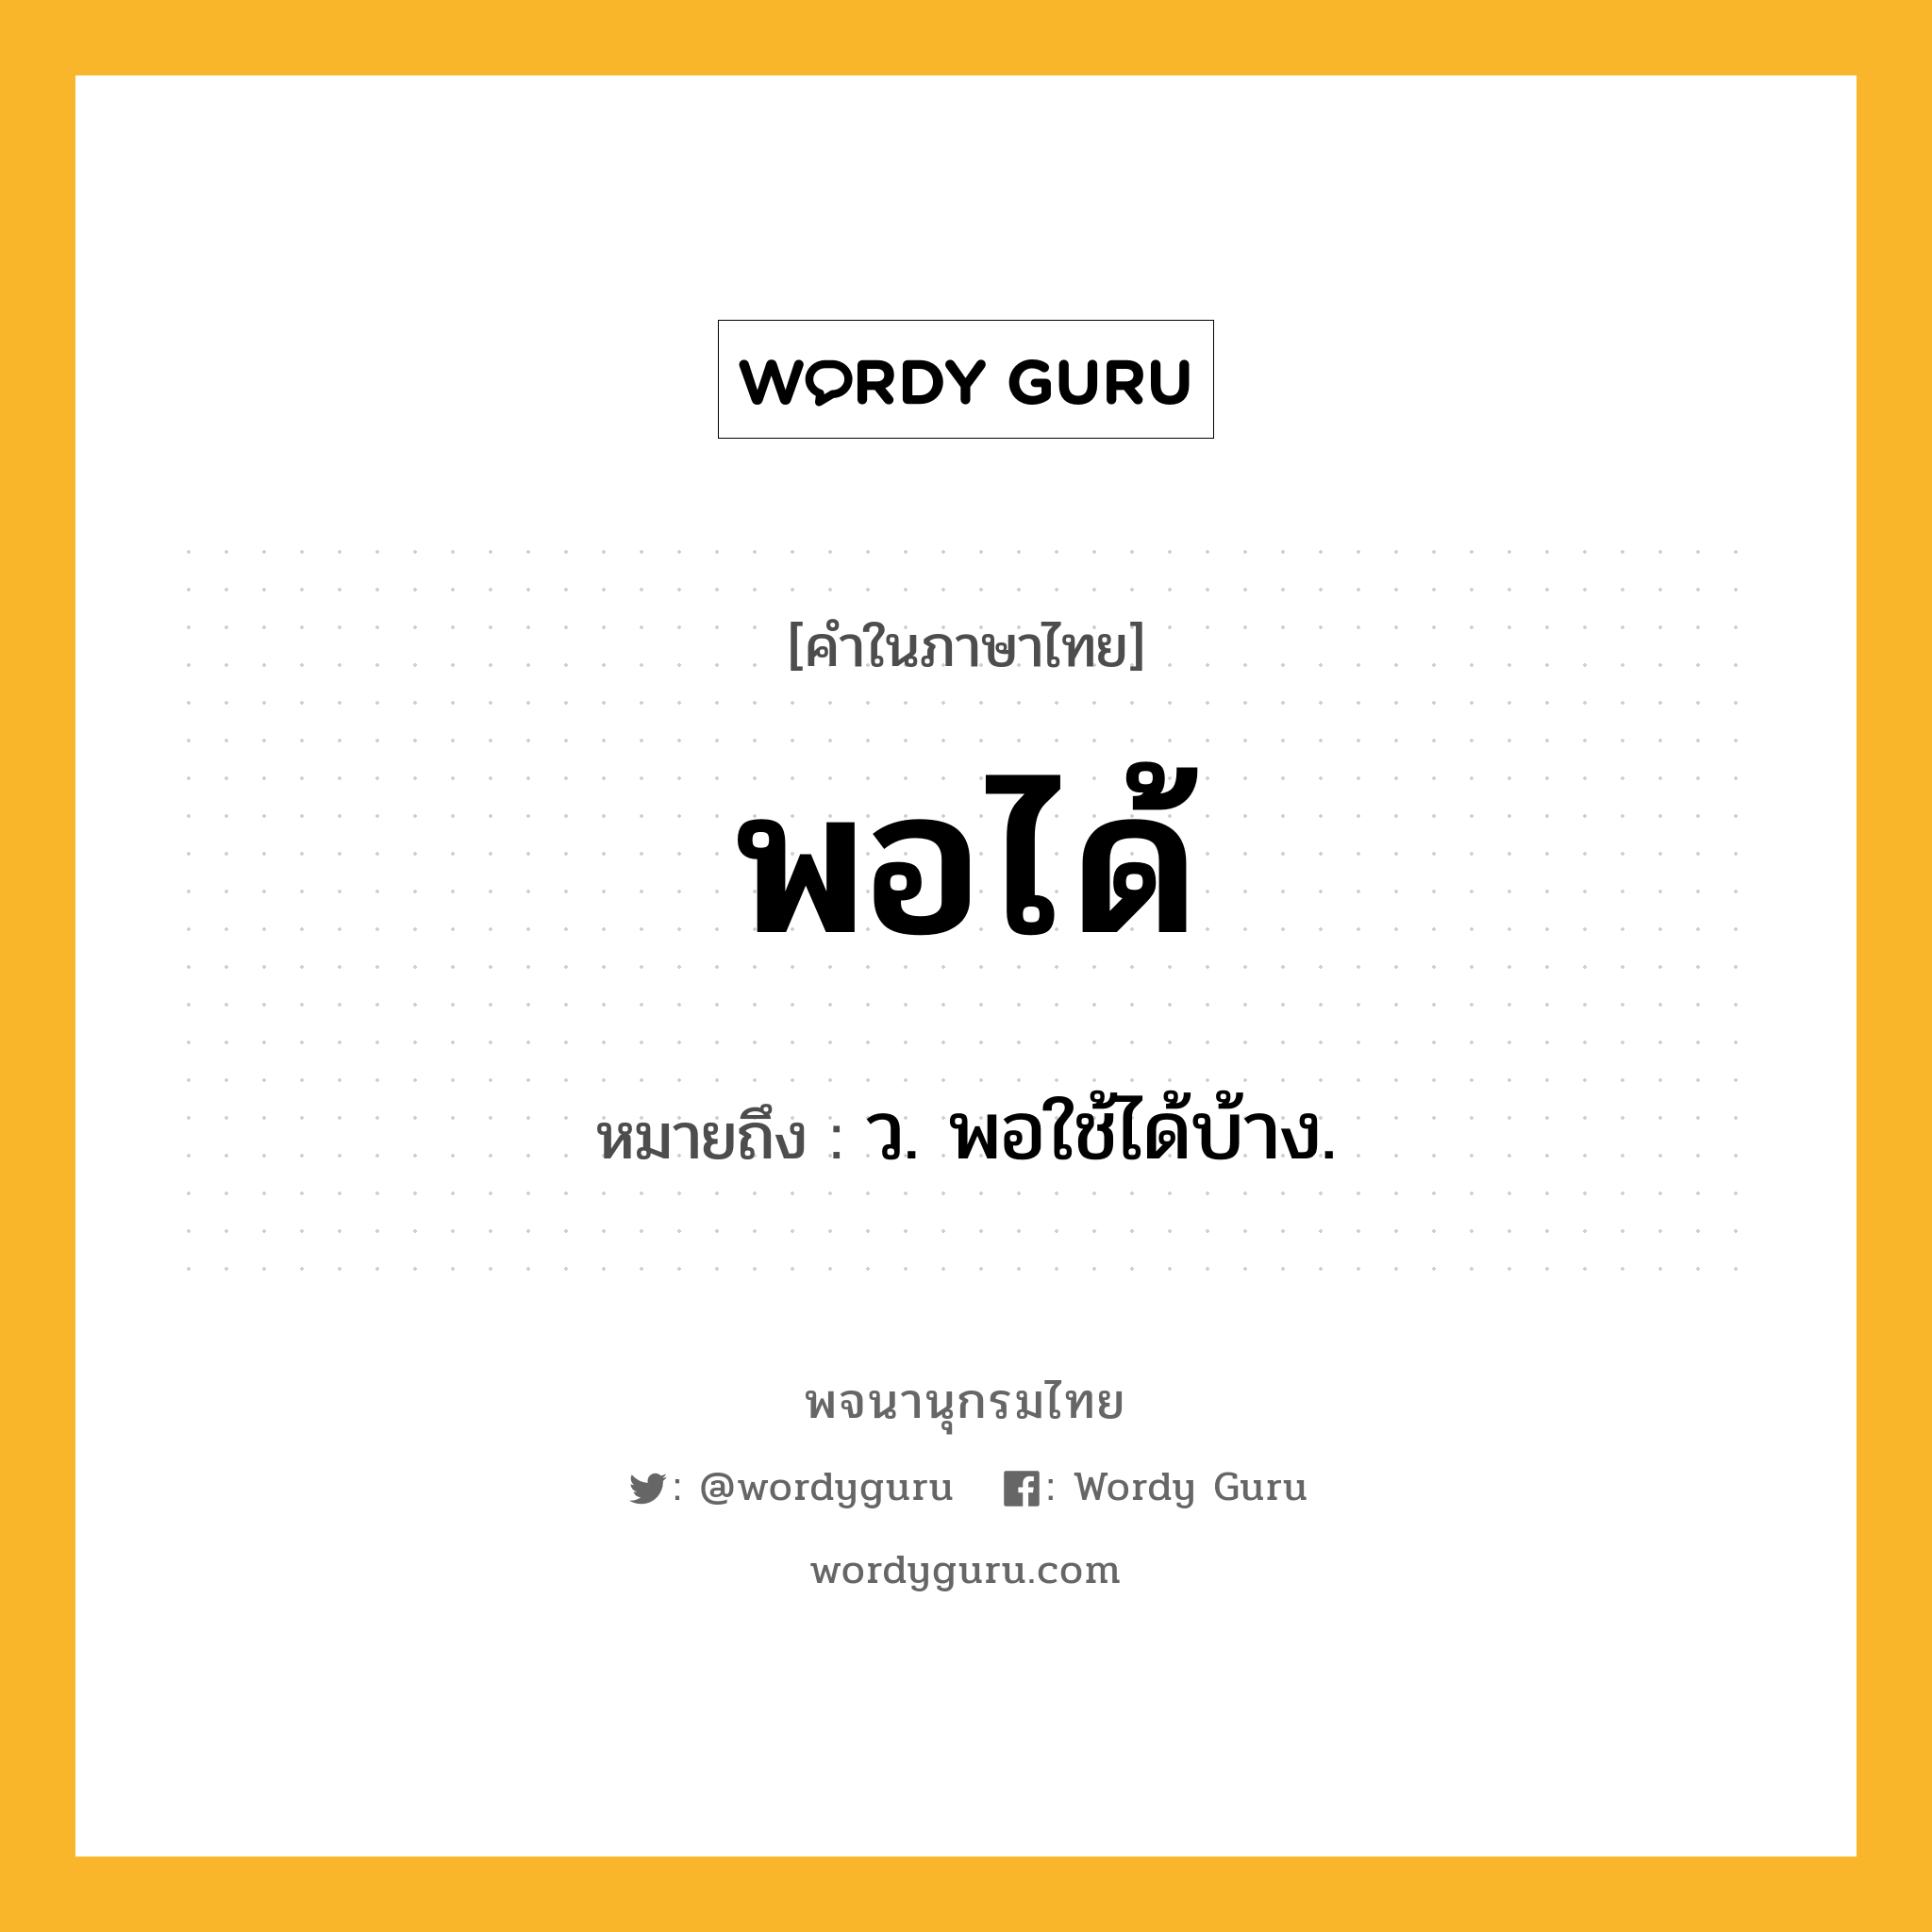 พอได้ หมายถึงอะไร?, คำในภาษาไทย พอได้ หมายถึง ว. พอใช้ได้บ้าง.